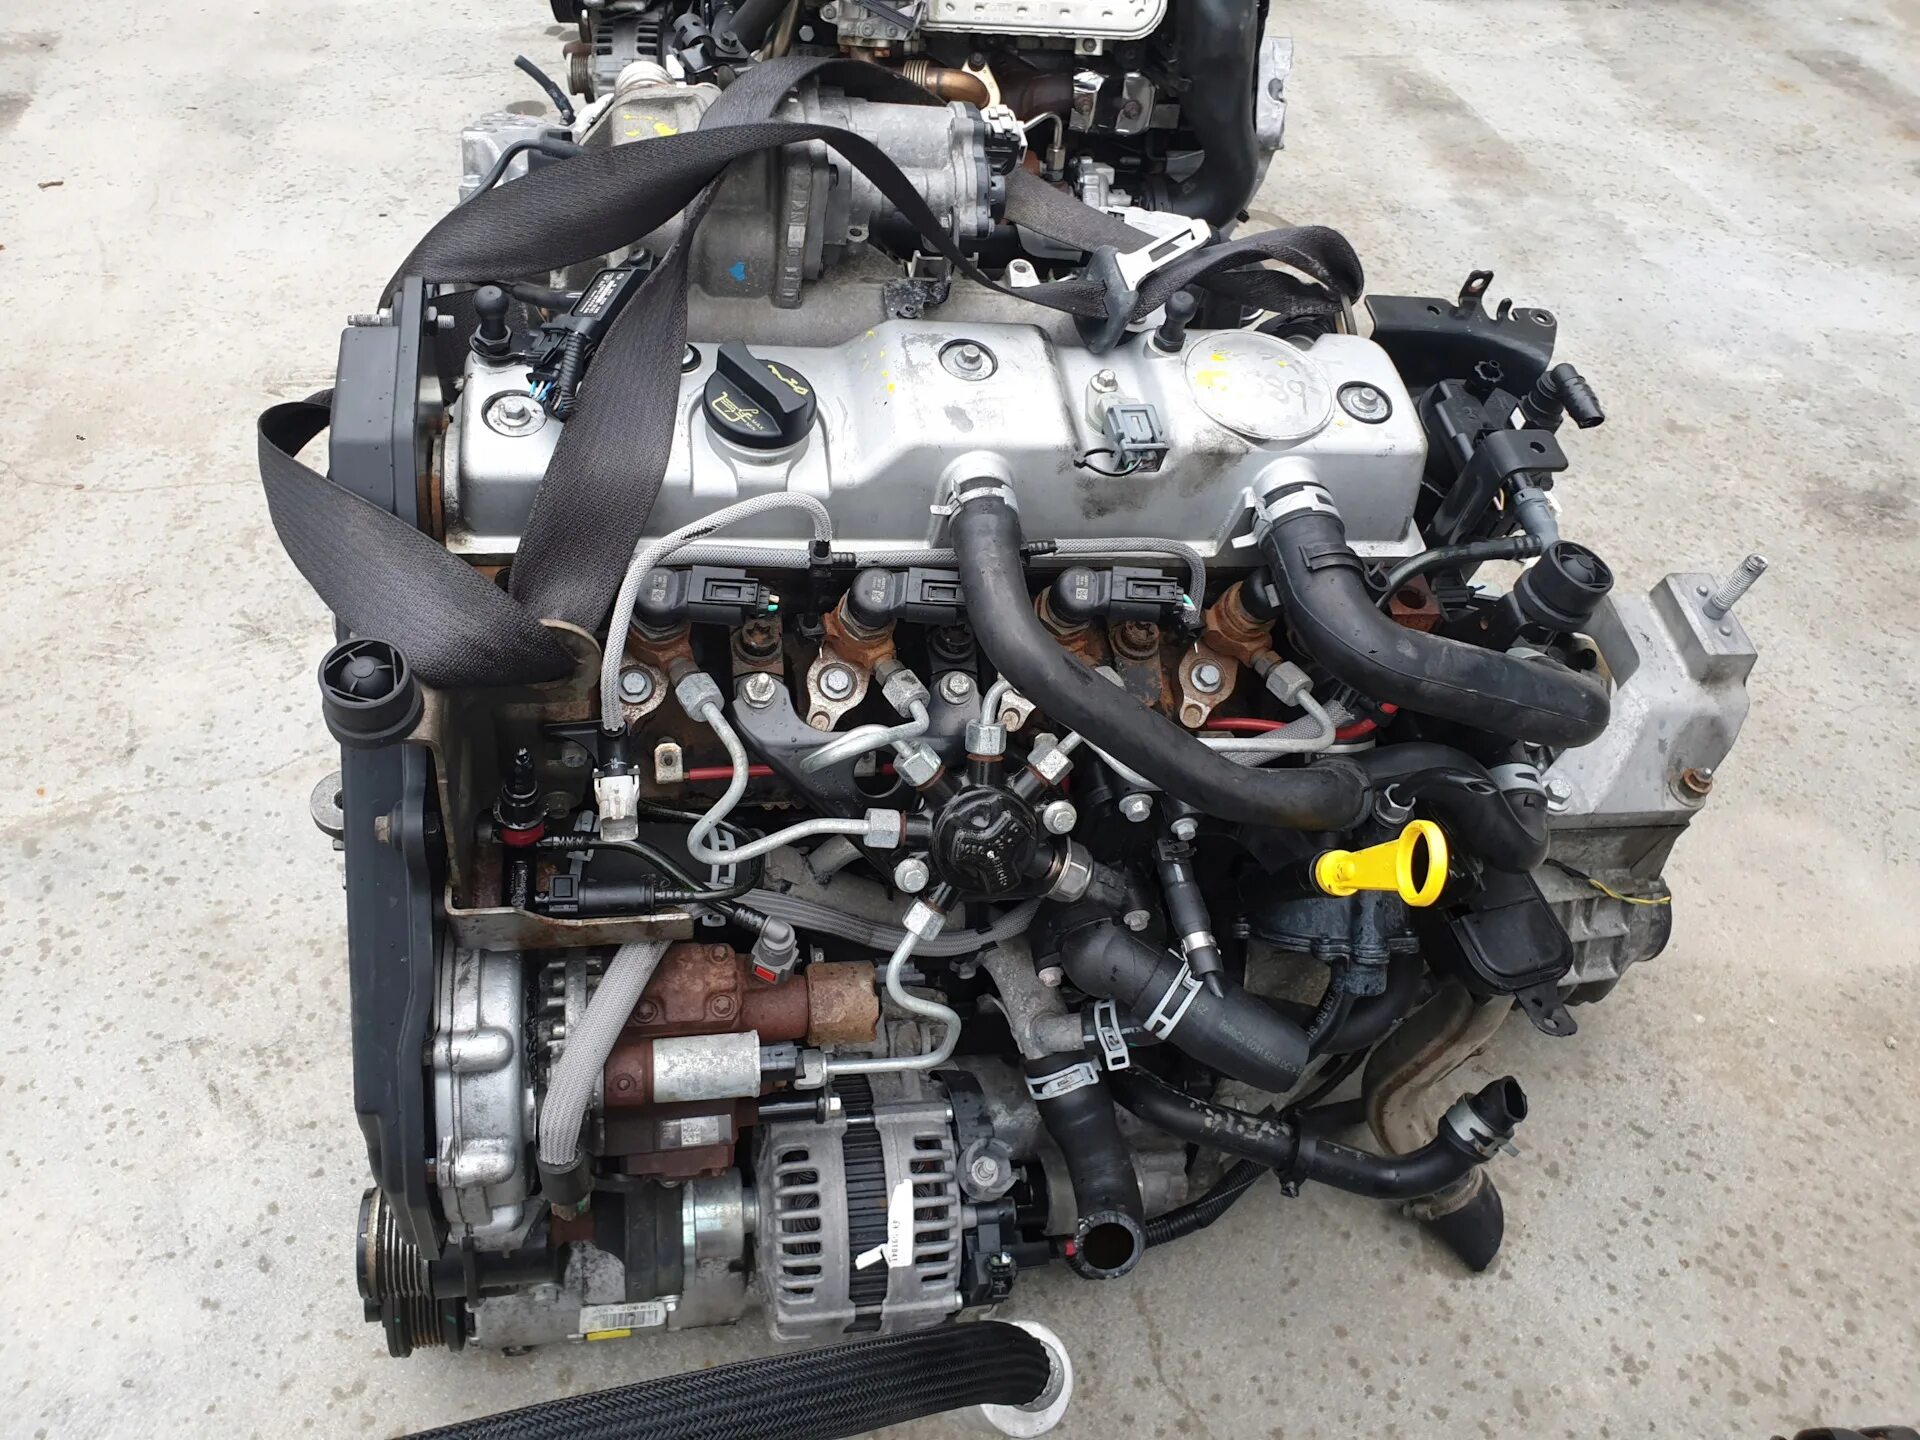 Двигатель торнео коннект. Двигатель Форд Коннект 1.8 дизель. Форд Транзит Коннект 1.8 дизель. Двигатель Форт Транзит Конект 1.8. Двигатель Ford Tourneo connect 1.8 дизель.